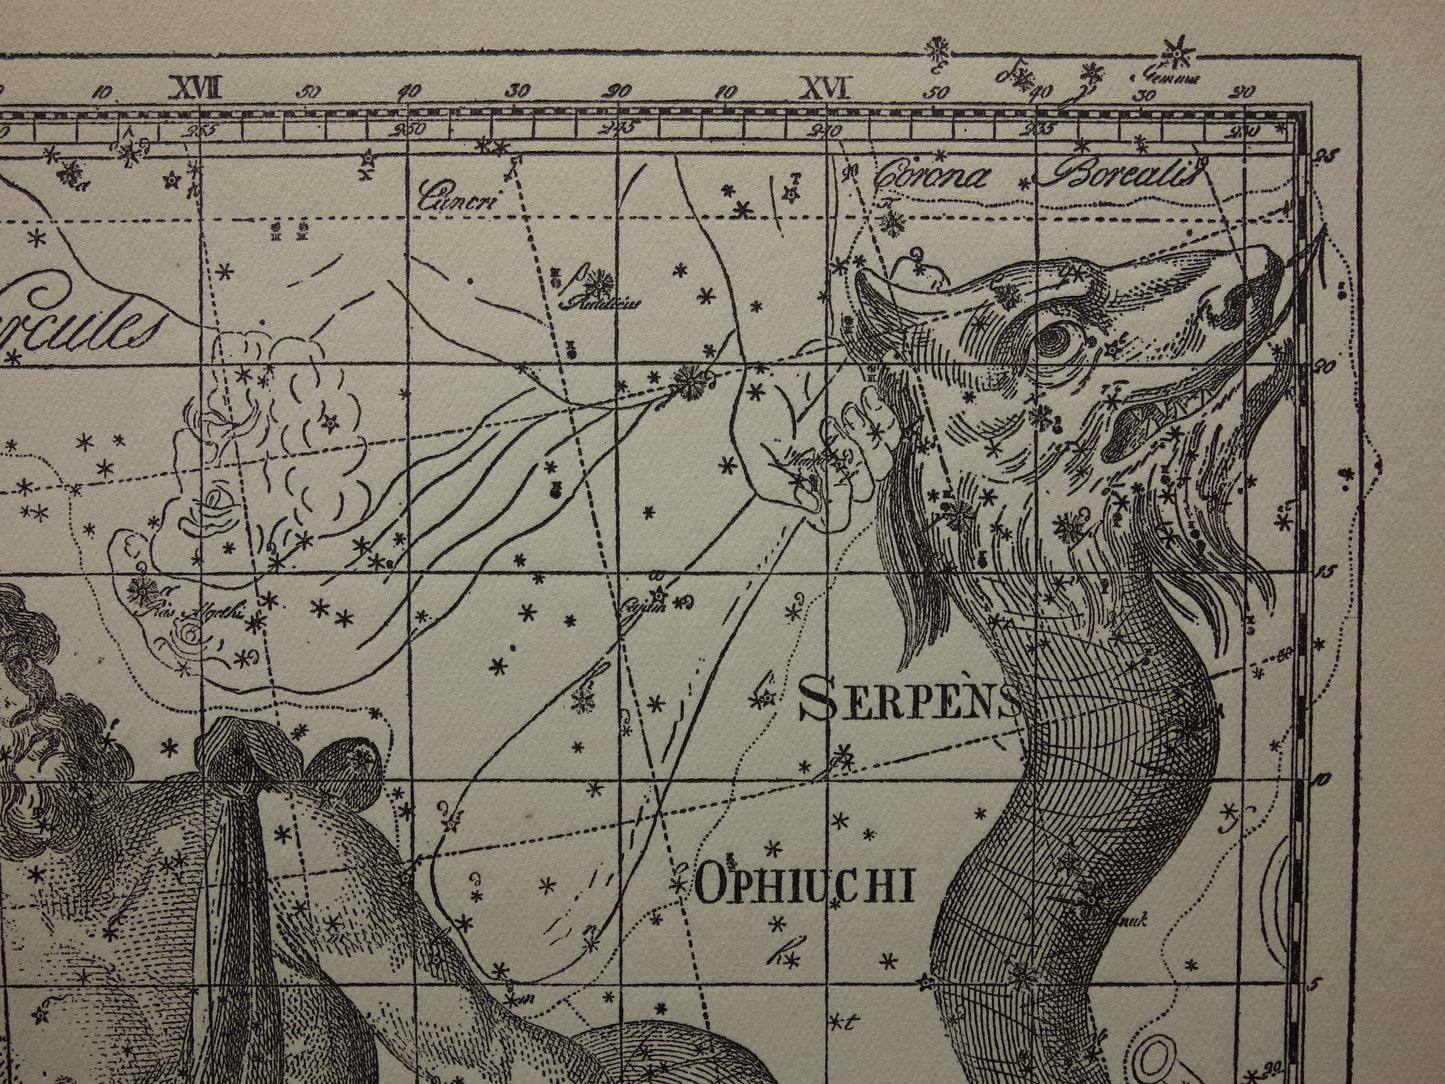 Sterrenbeeld Ophiuchus Slangendrager Taurus Stier vintage illustratie - Antieke sterrenkaart Sterrenbeelden - Oude prent Aquila Arend en Antinous astronomie astrologie print